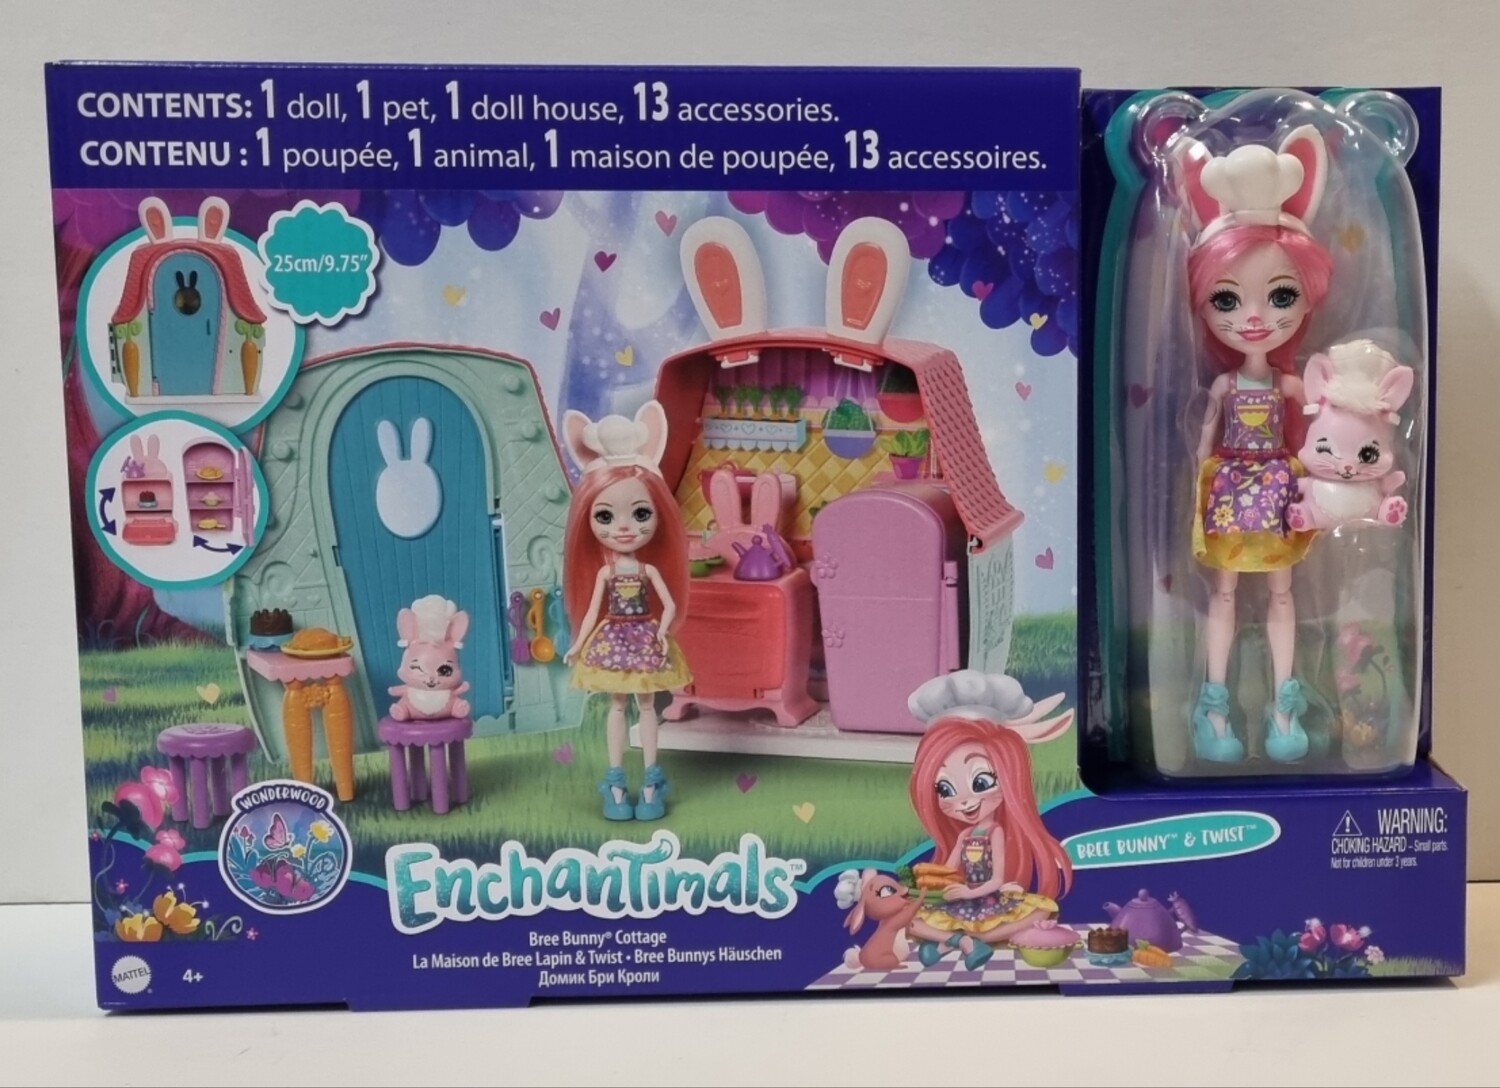 Enchantimals, Bree Bunny Cottage, Bree Bunny & Twist